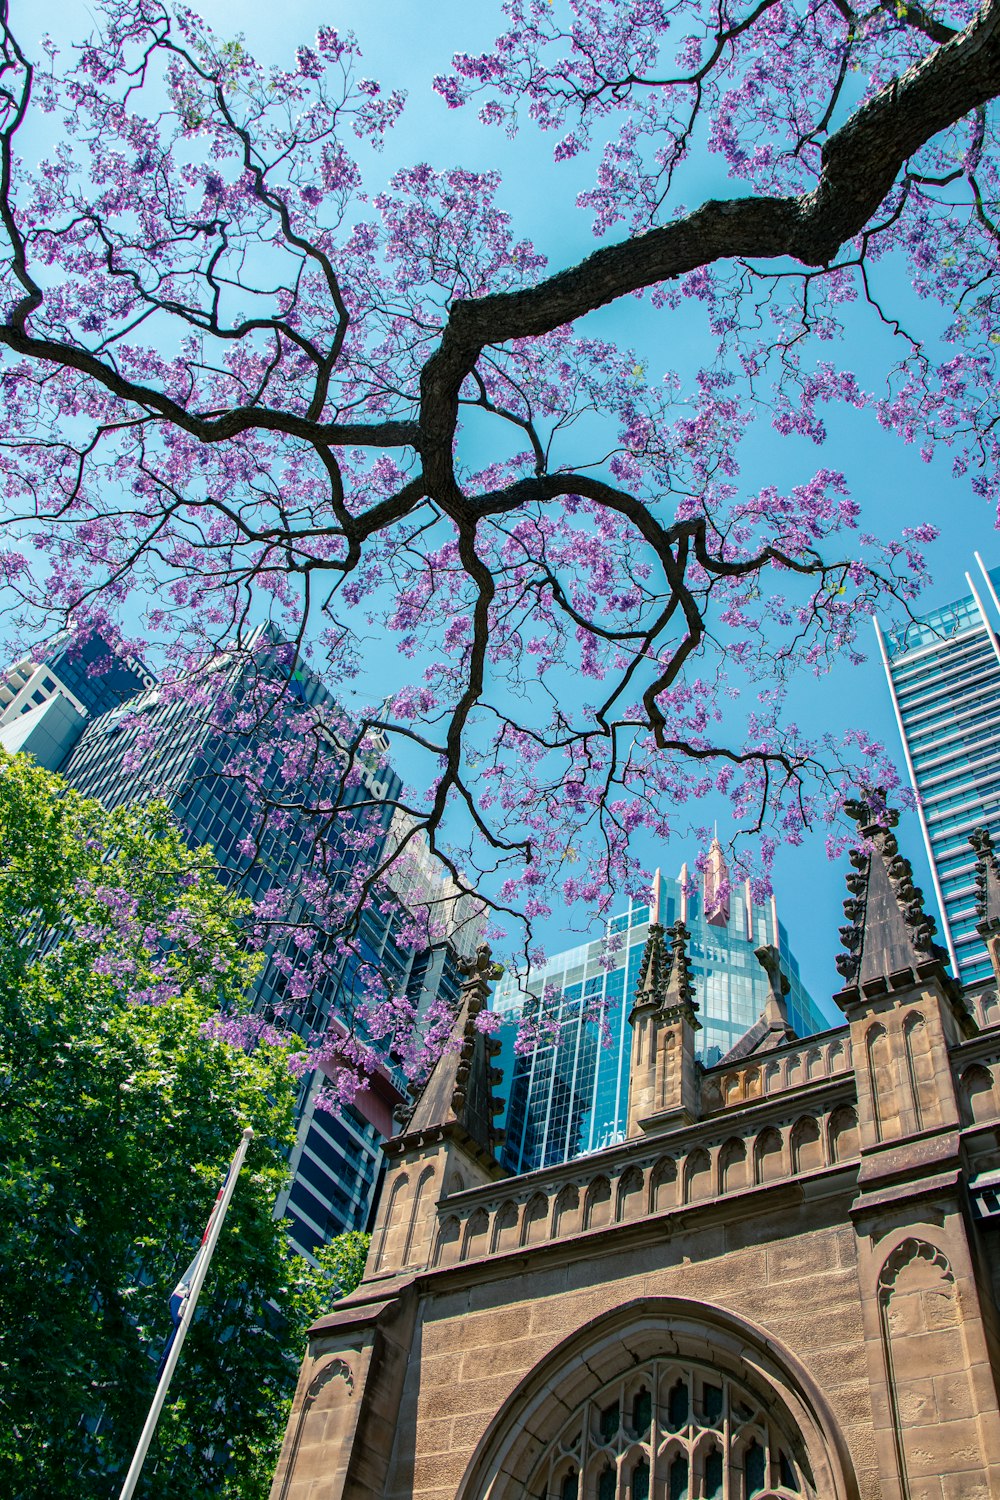 Fotografía de ángulo bajo de un árbol de flores púrpuras fuera de un edificio